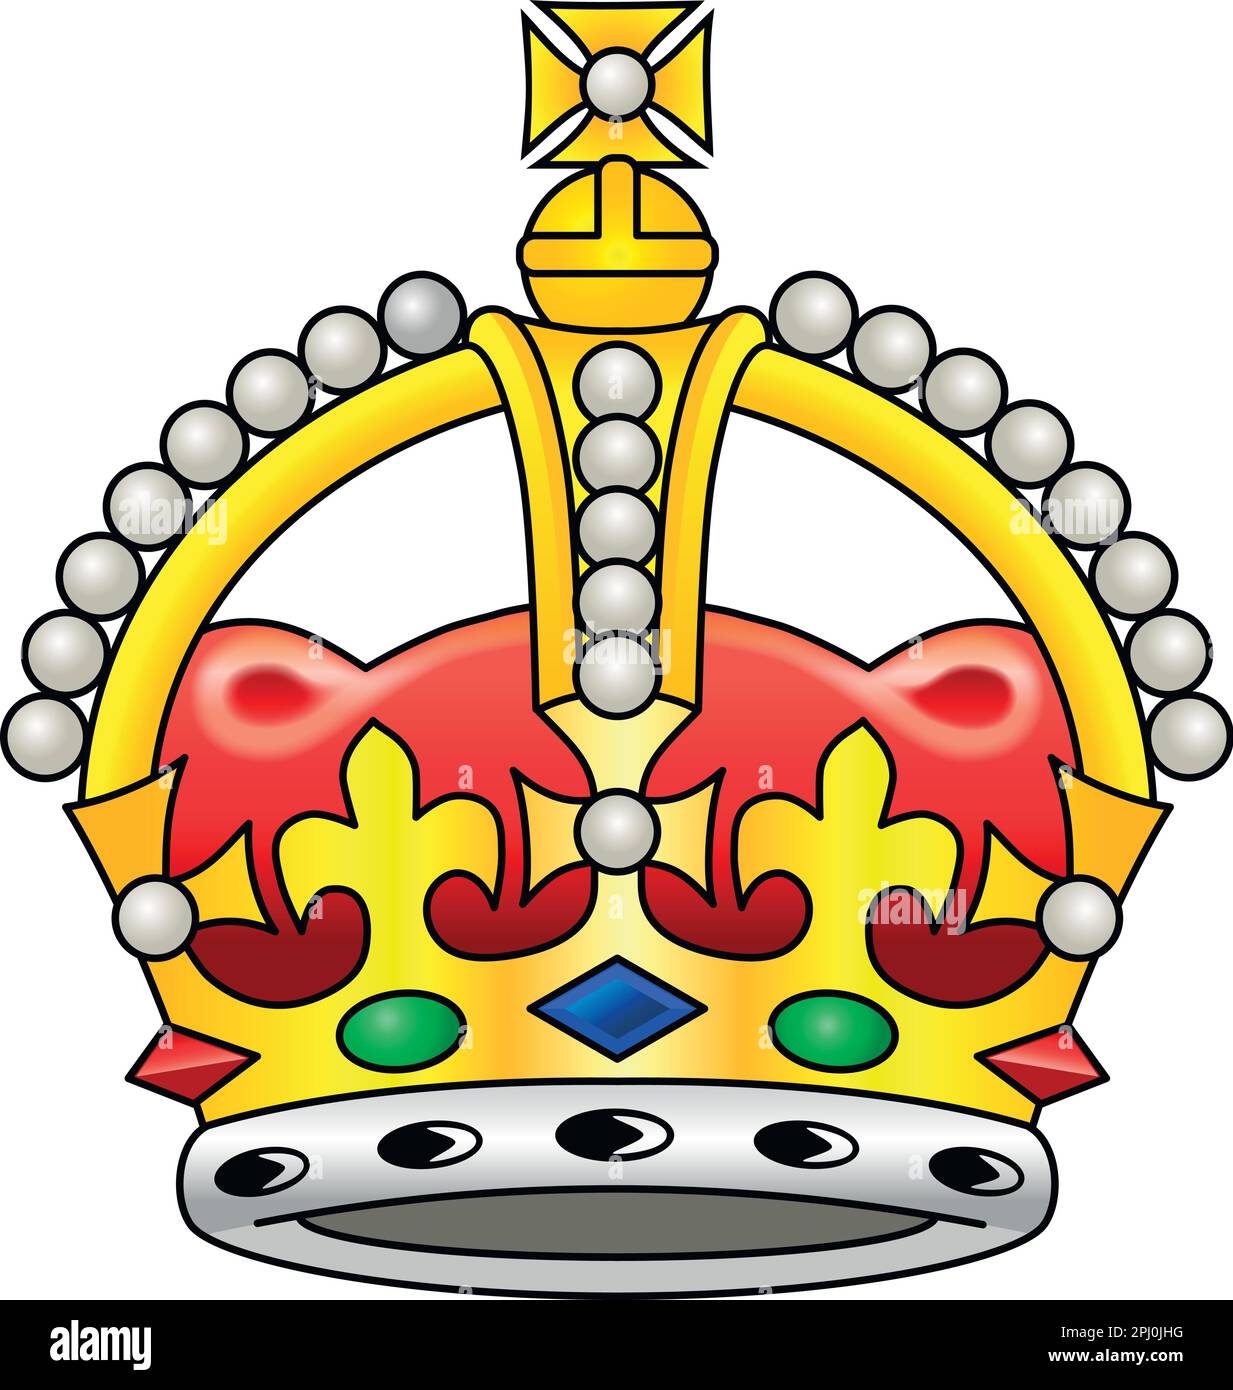 Corona británica en el fondo blanco, reino Unido, ilustración vectorial Ilustración del Vector